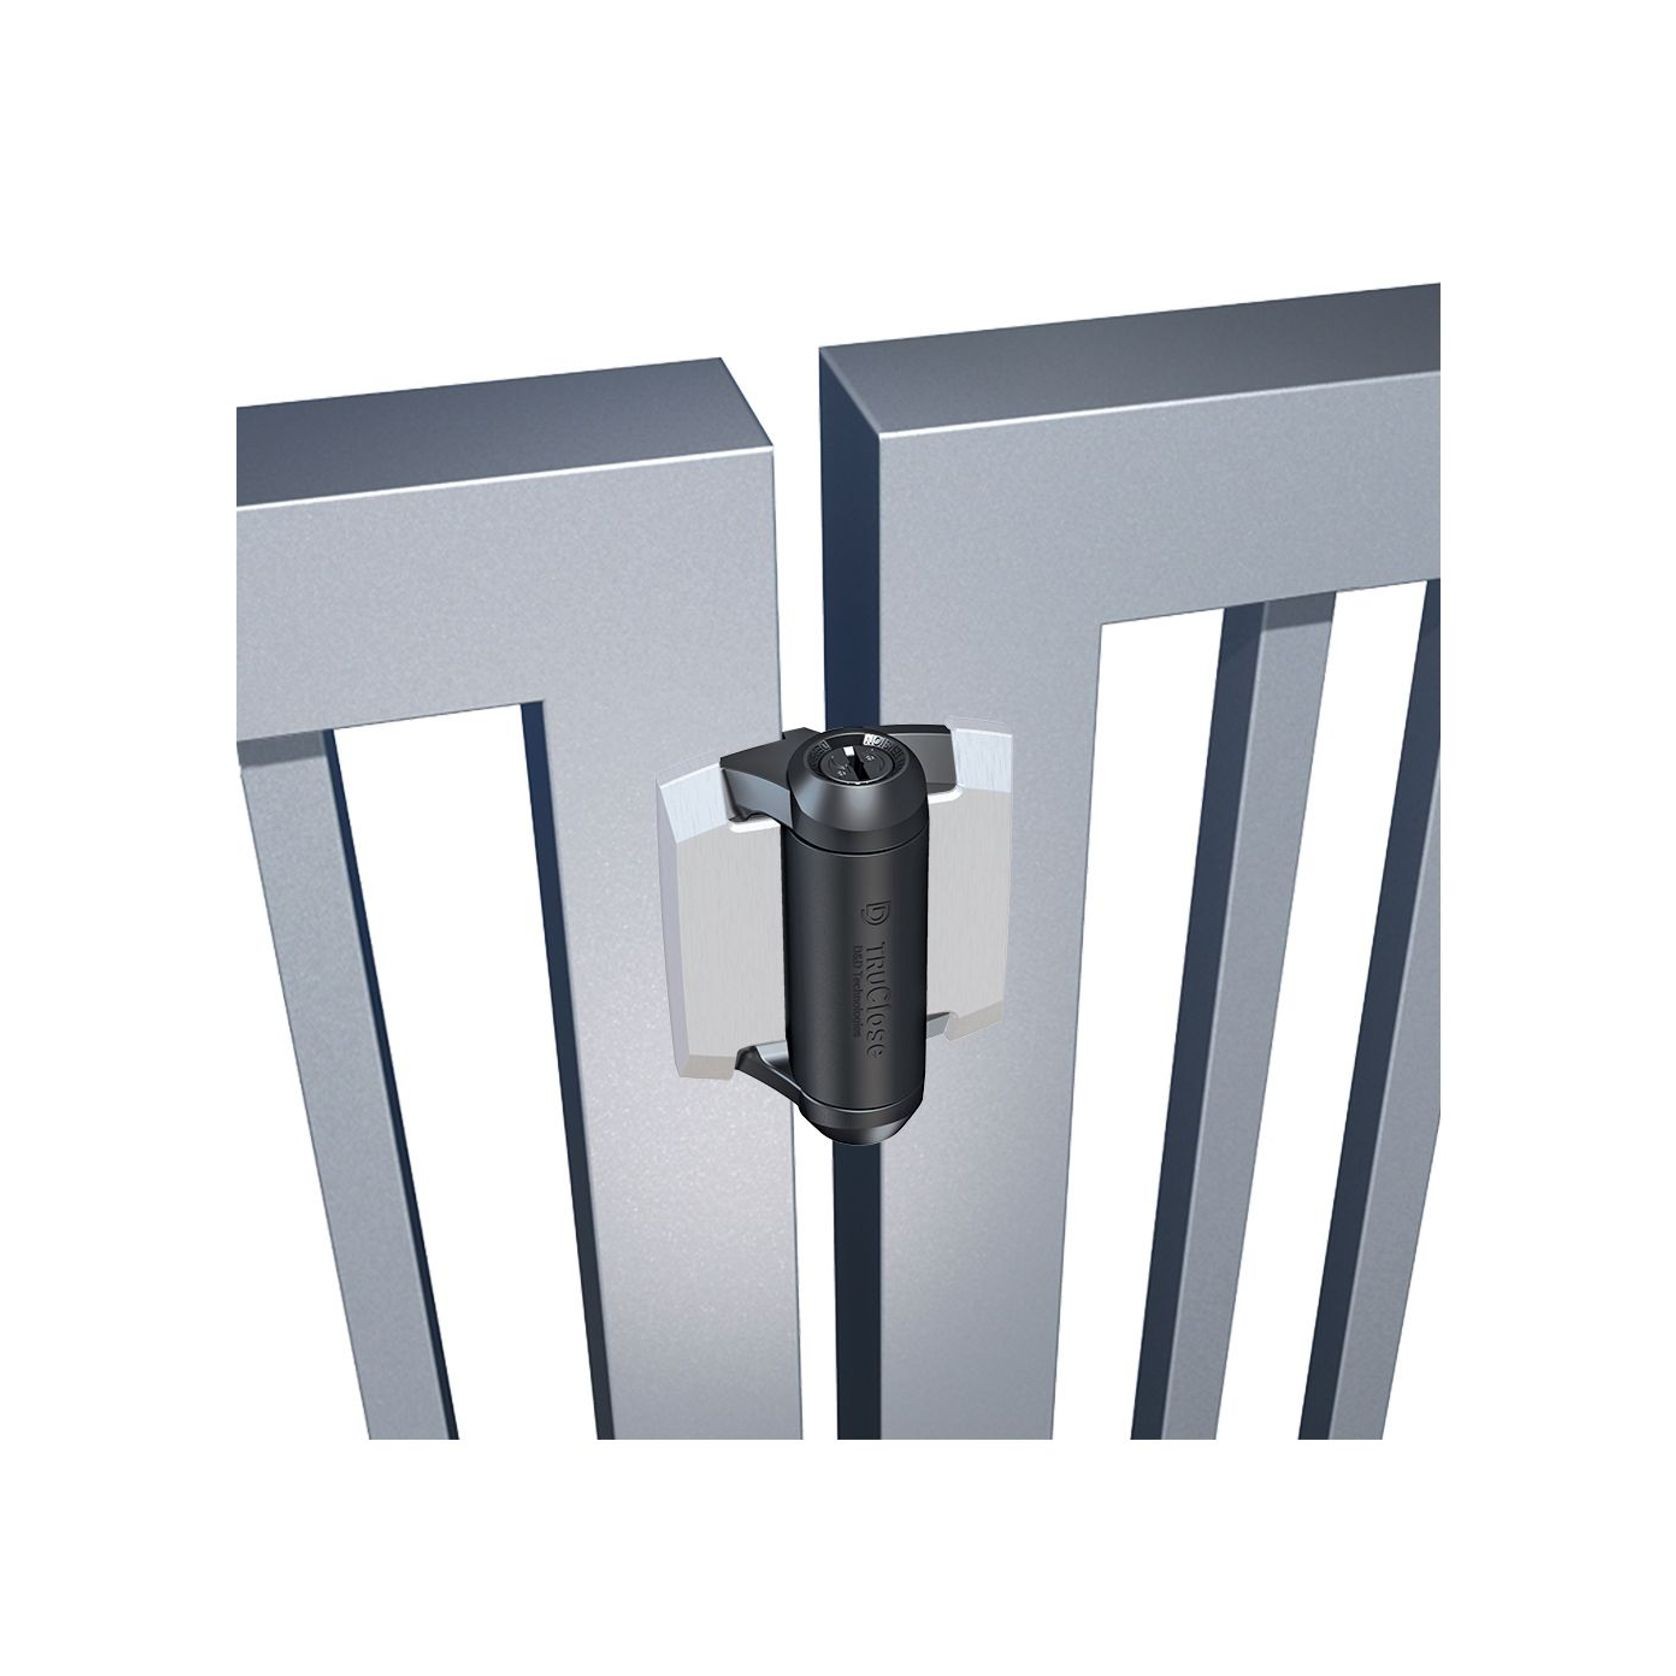 Truclose®  Regular Hinge For Metal Gates gallery detail image